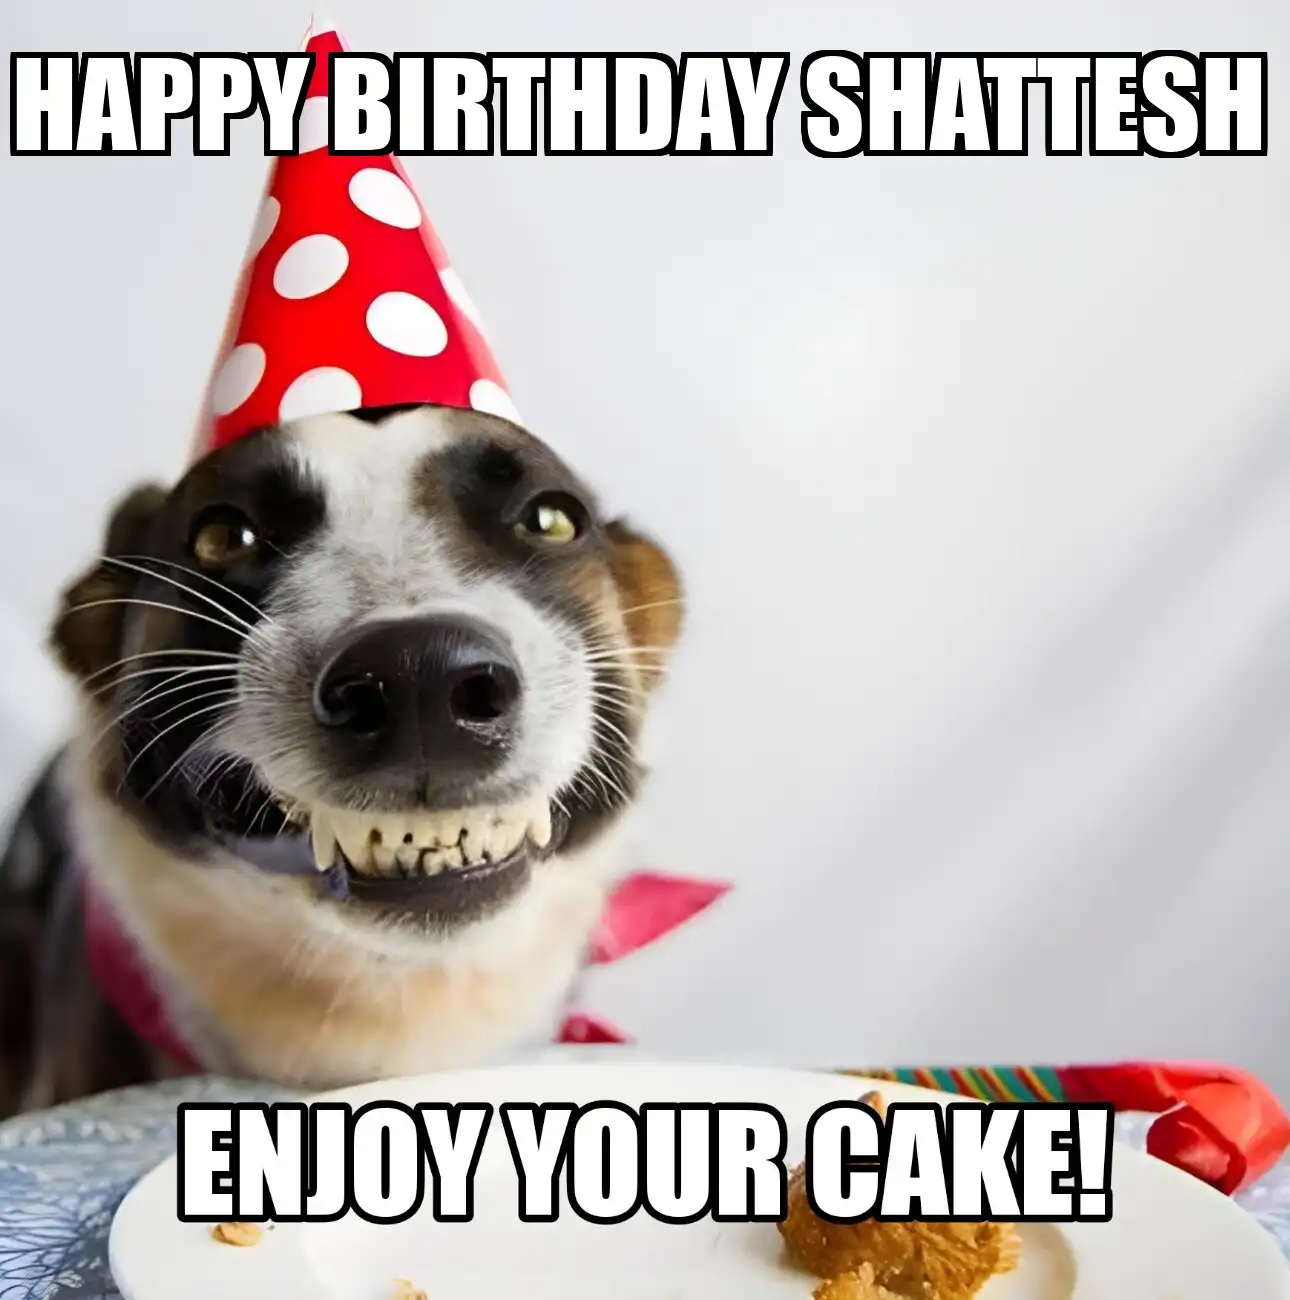 Happy Birthday Shattesh Enjoy Your Cake Dog Meme